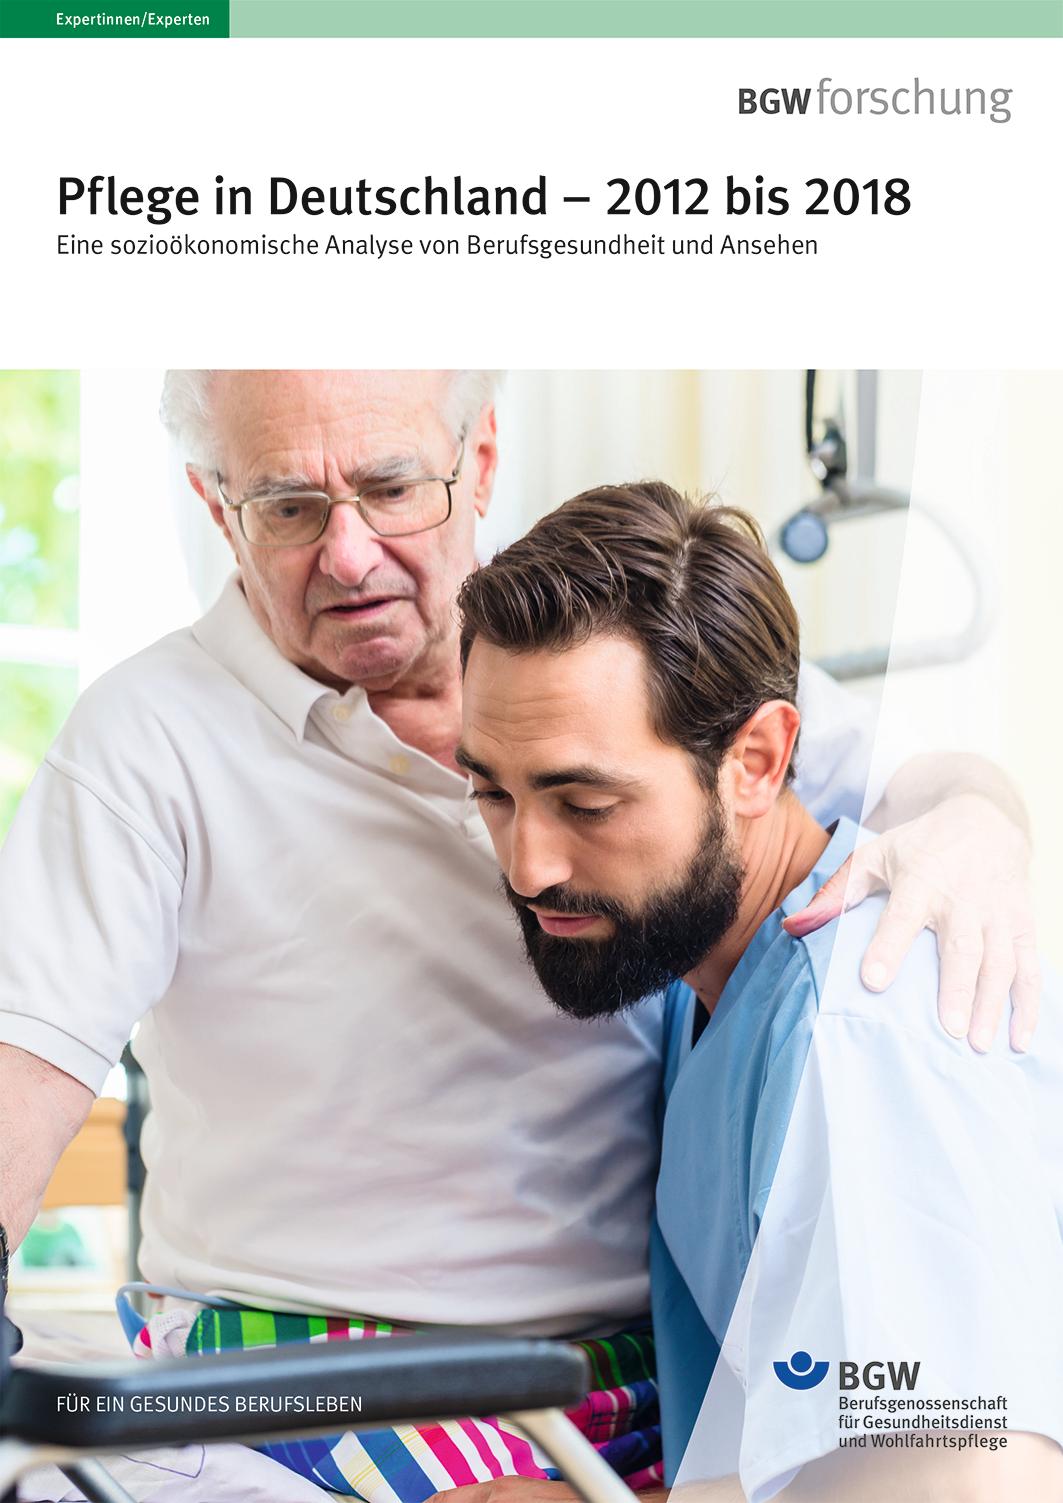 Bgw Veroffentlicht Bericht Pflege In Deutschland 12 Bis 18 Presseportal